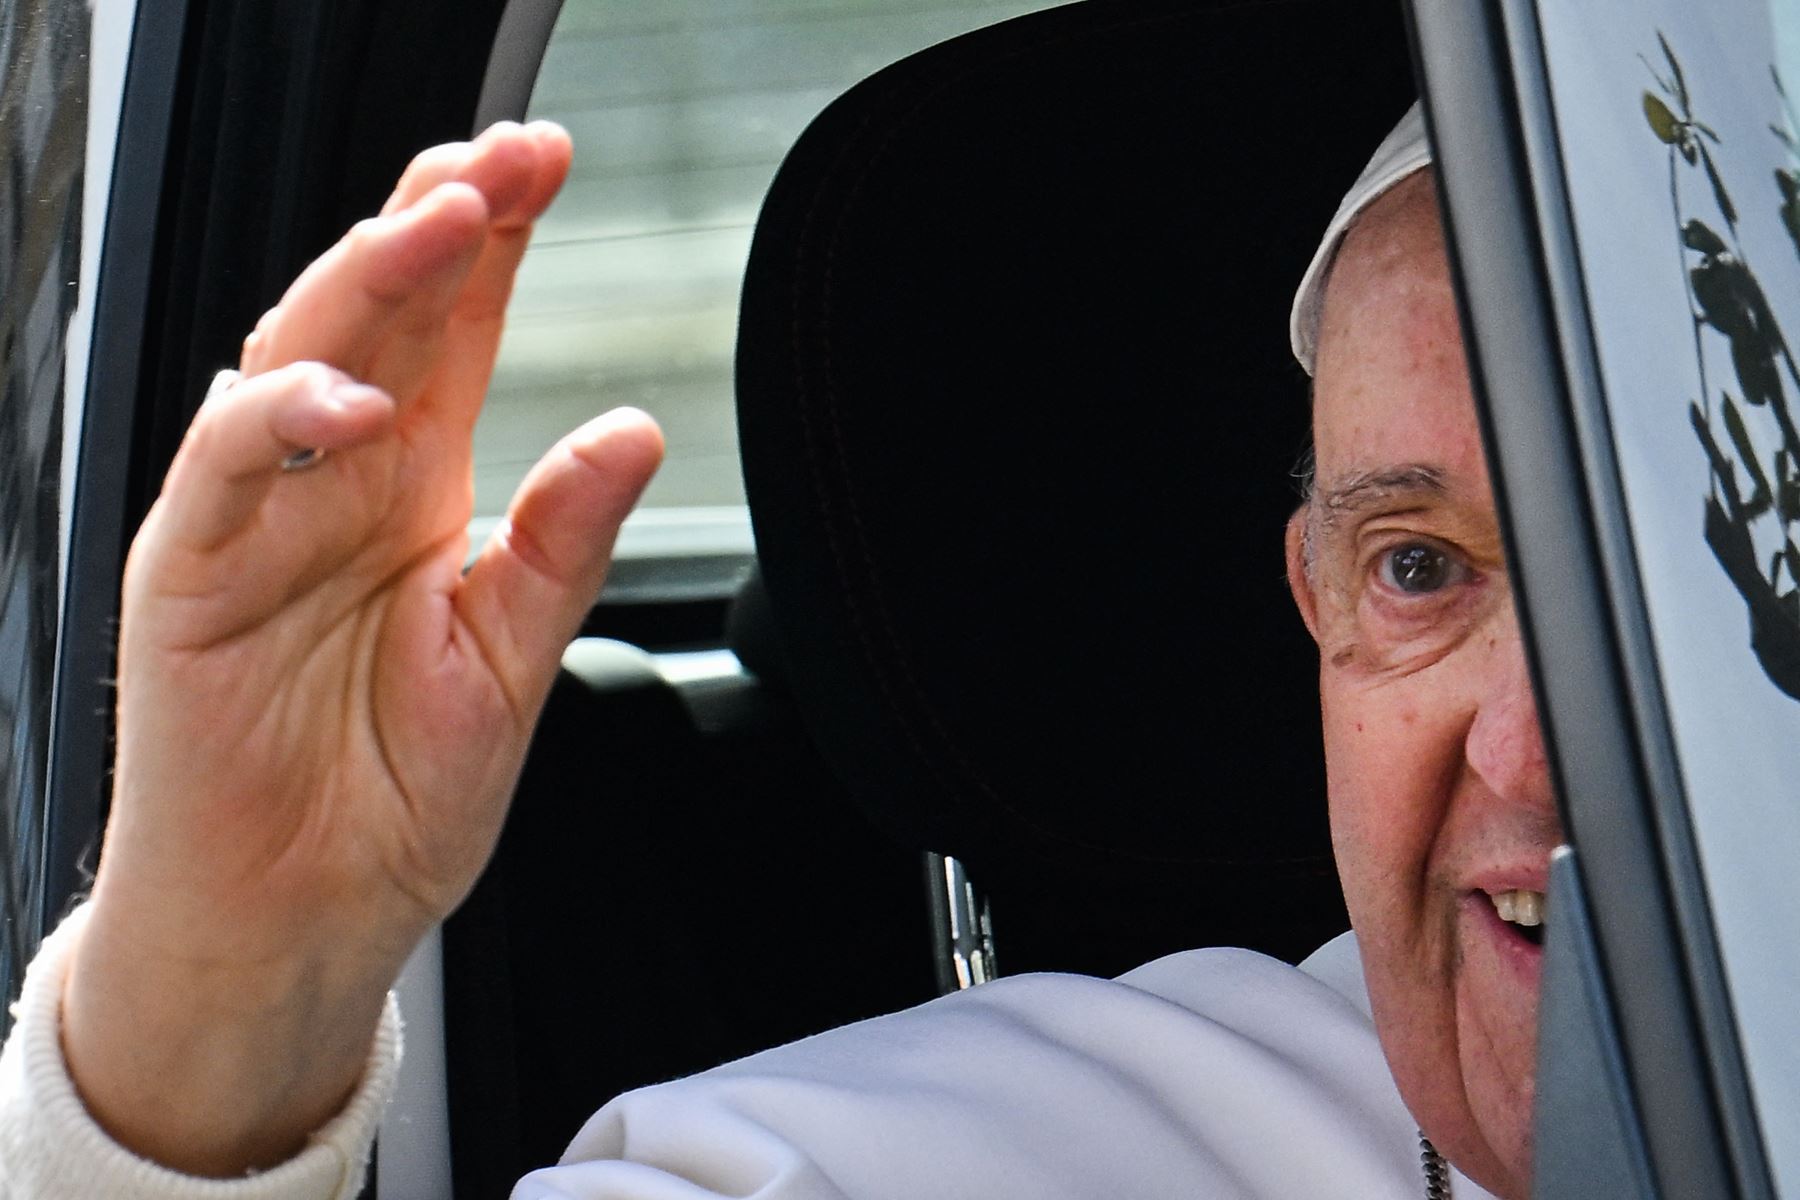 El Papa Francisco saluda desde su coche a la salida del hospital Gemelli  en Roma, tras ser dado de alta después de un tratamiento contra la bronquitis. El pontífice, de 86 años, ingresó en el hospital Gemelli el 29 de marzo tras sufrir dificultades respiratorias. Foto: AFP